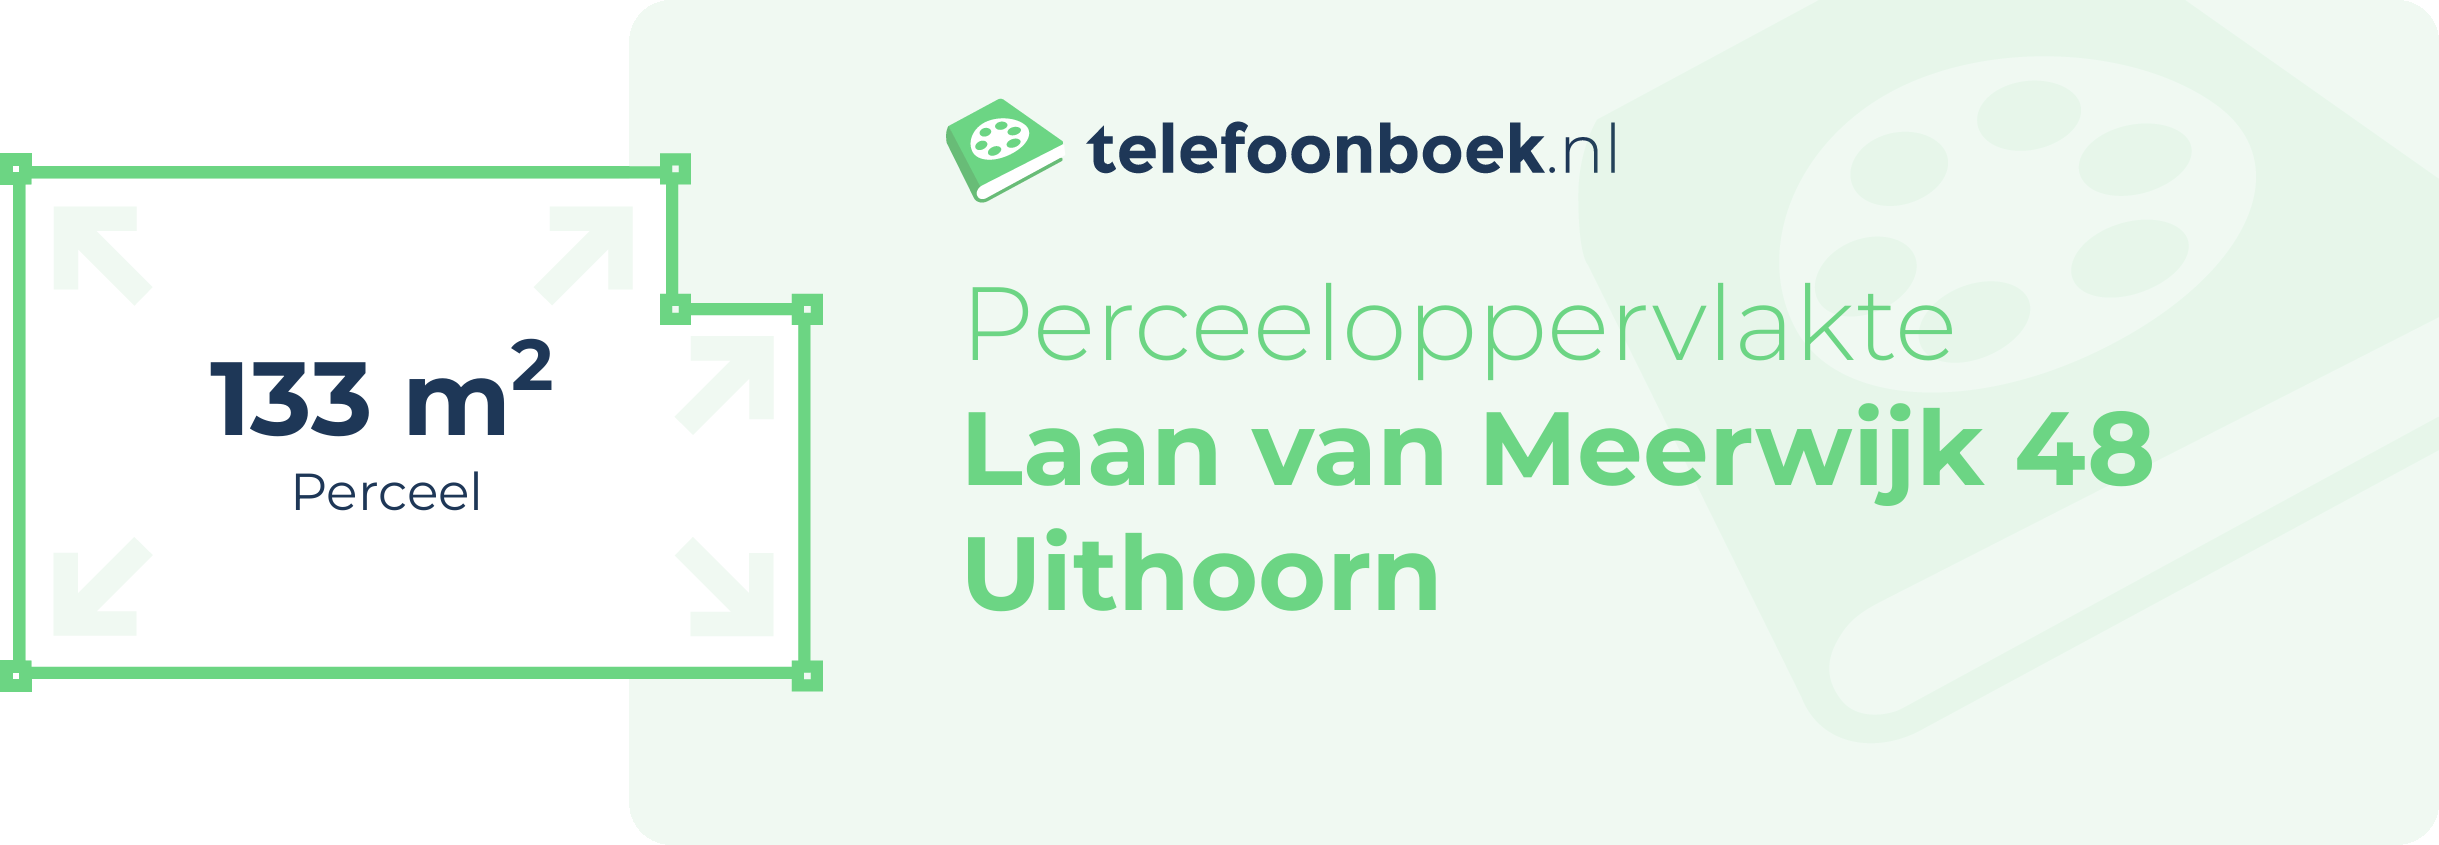 Perceeloppervlakte Laan Van Meerwijk 48 Uithoorn